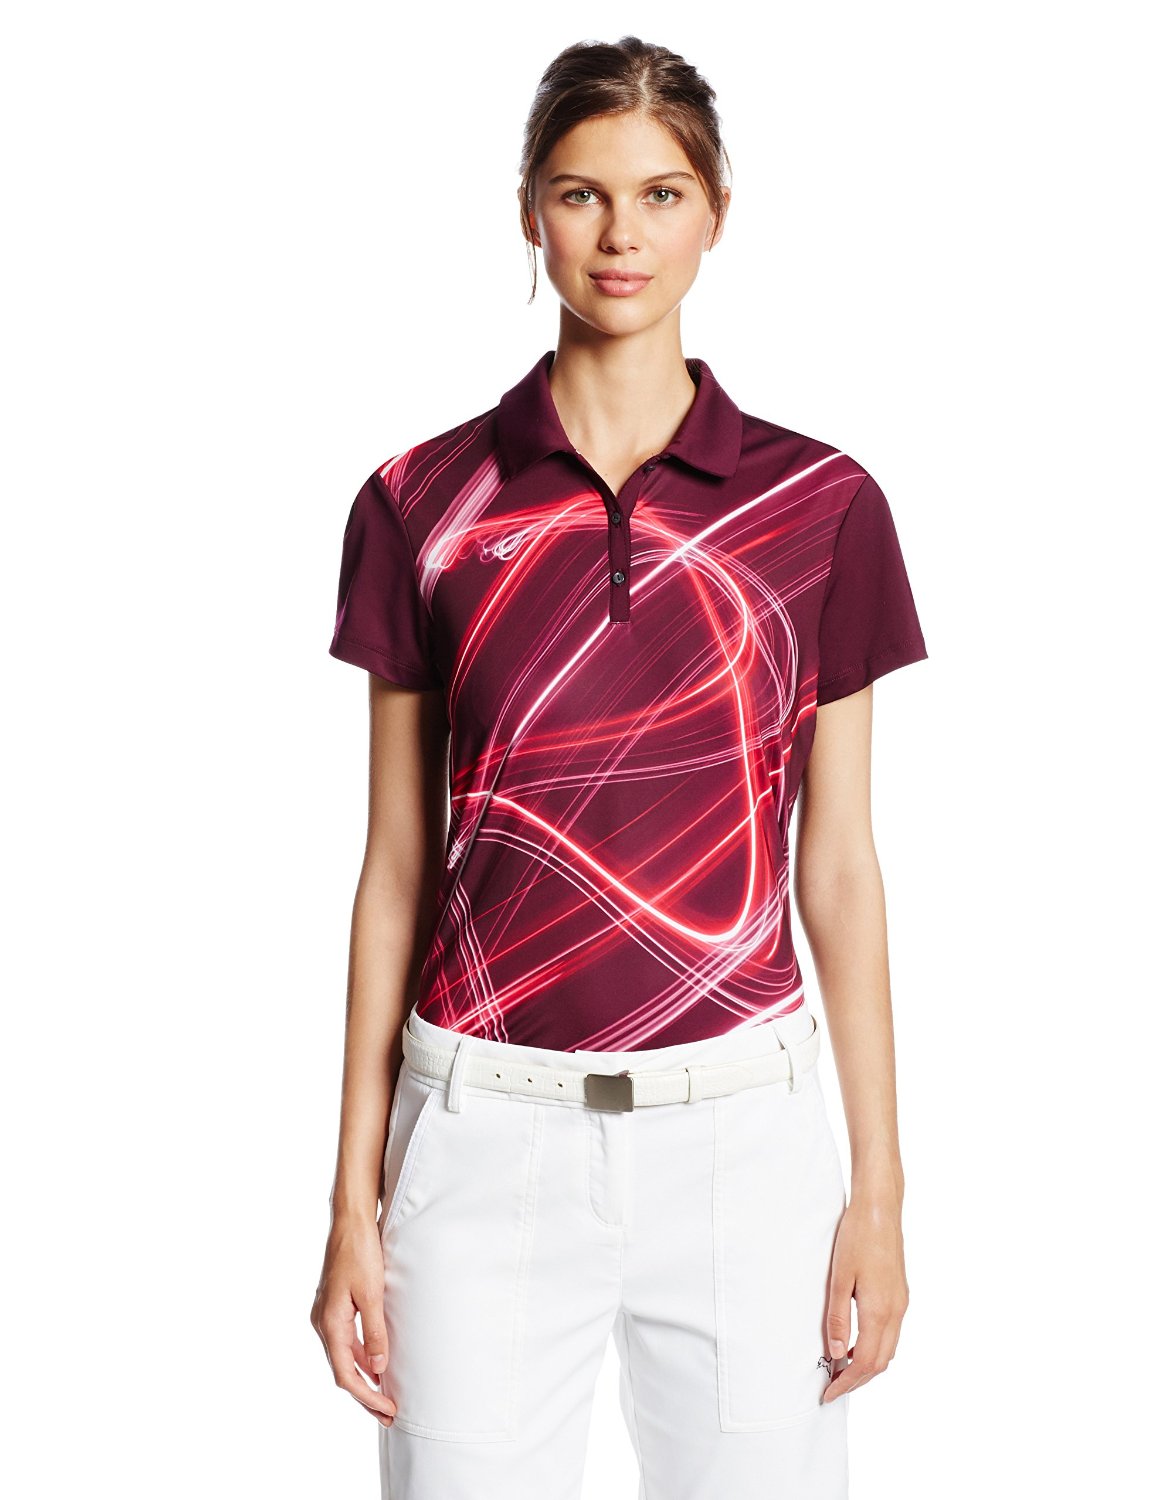 Womens Puma NA Fluid Light Golf Polo Shirts